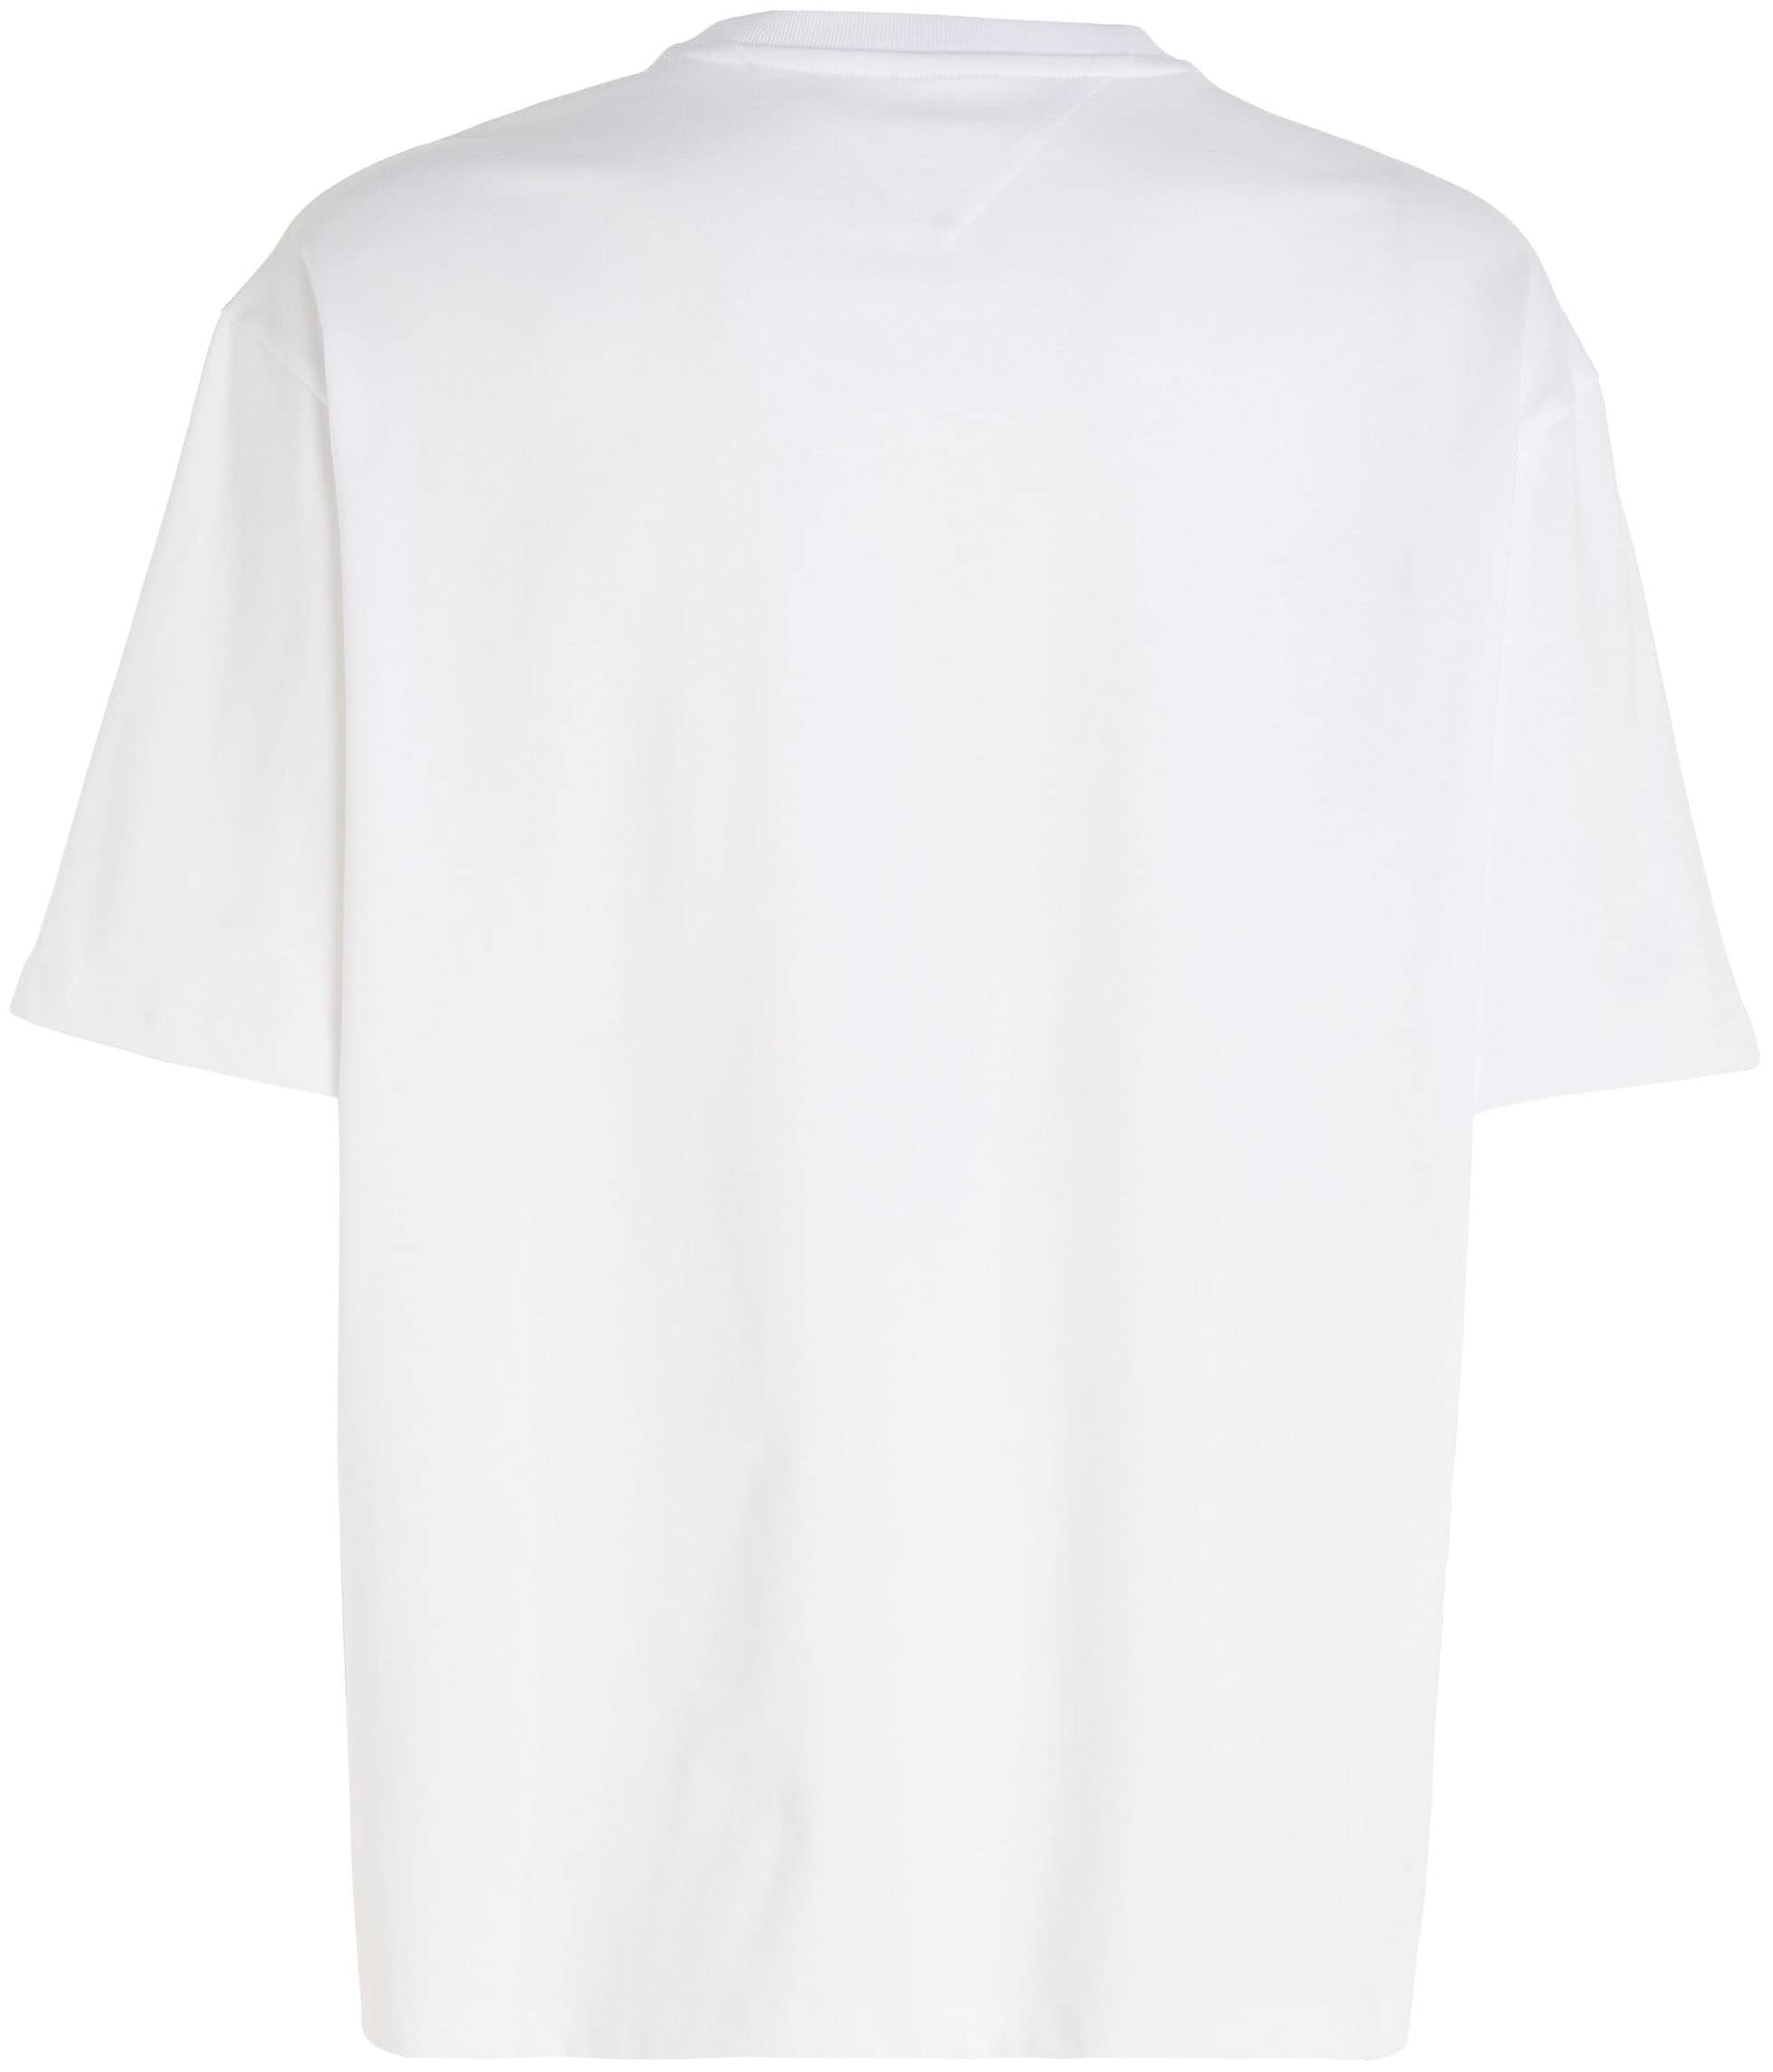 Tommy Jeans T-Shirt »TJM OVZ BOLD CLASSICS TEE EXT«, mit Rundhalsausschnitt